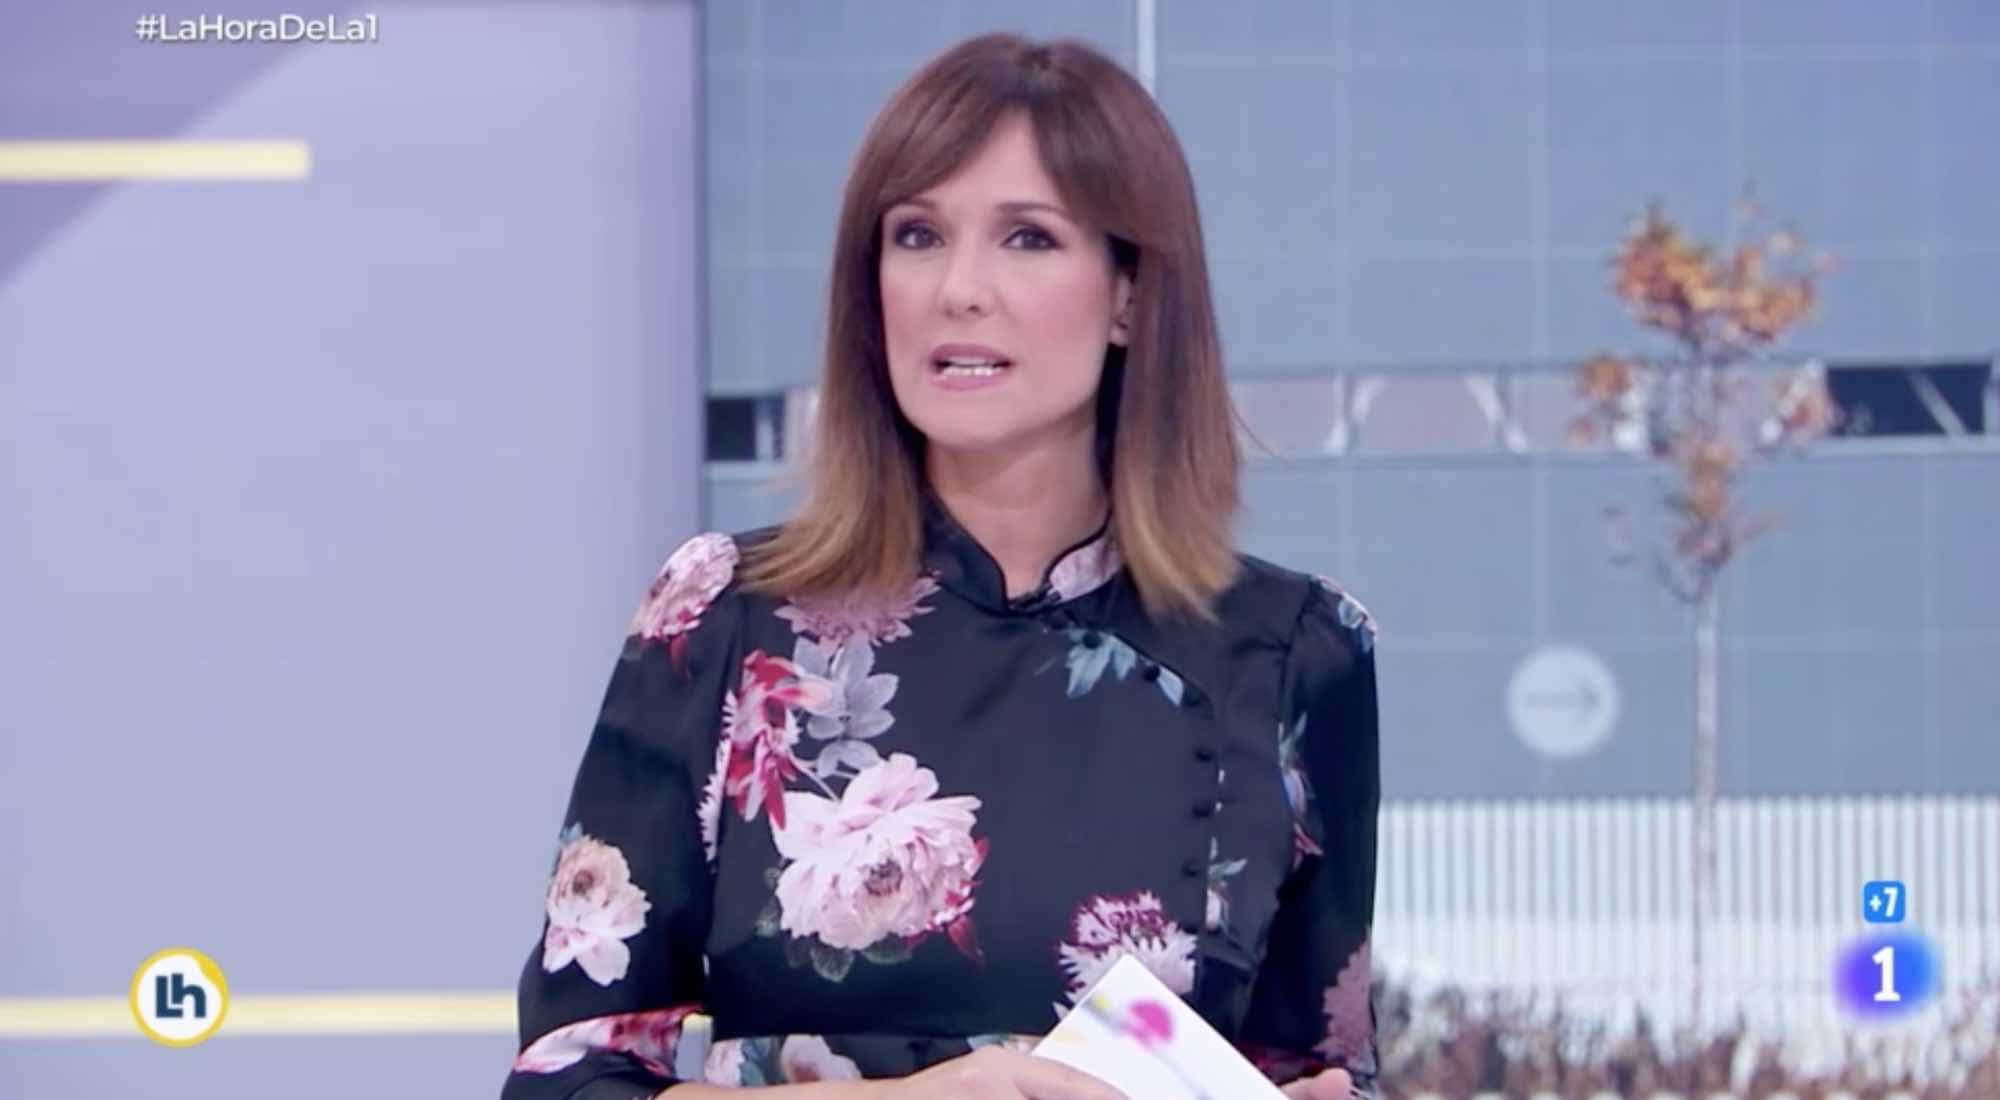 Mónica López en 'La hora de La 1'